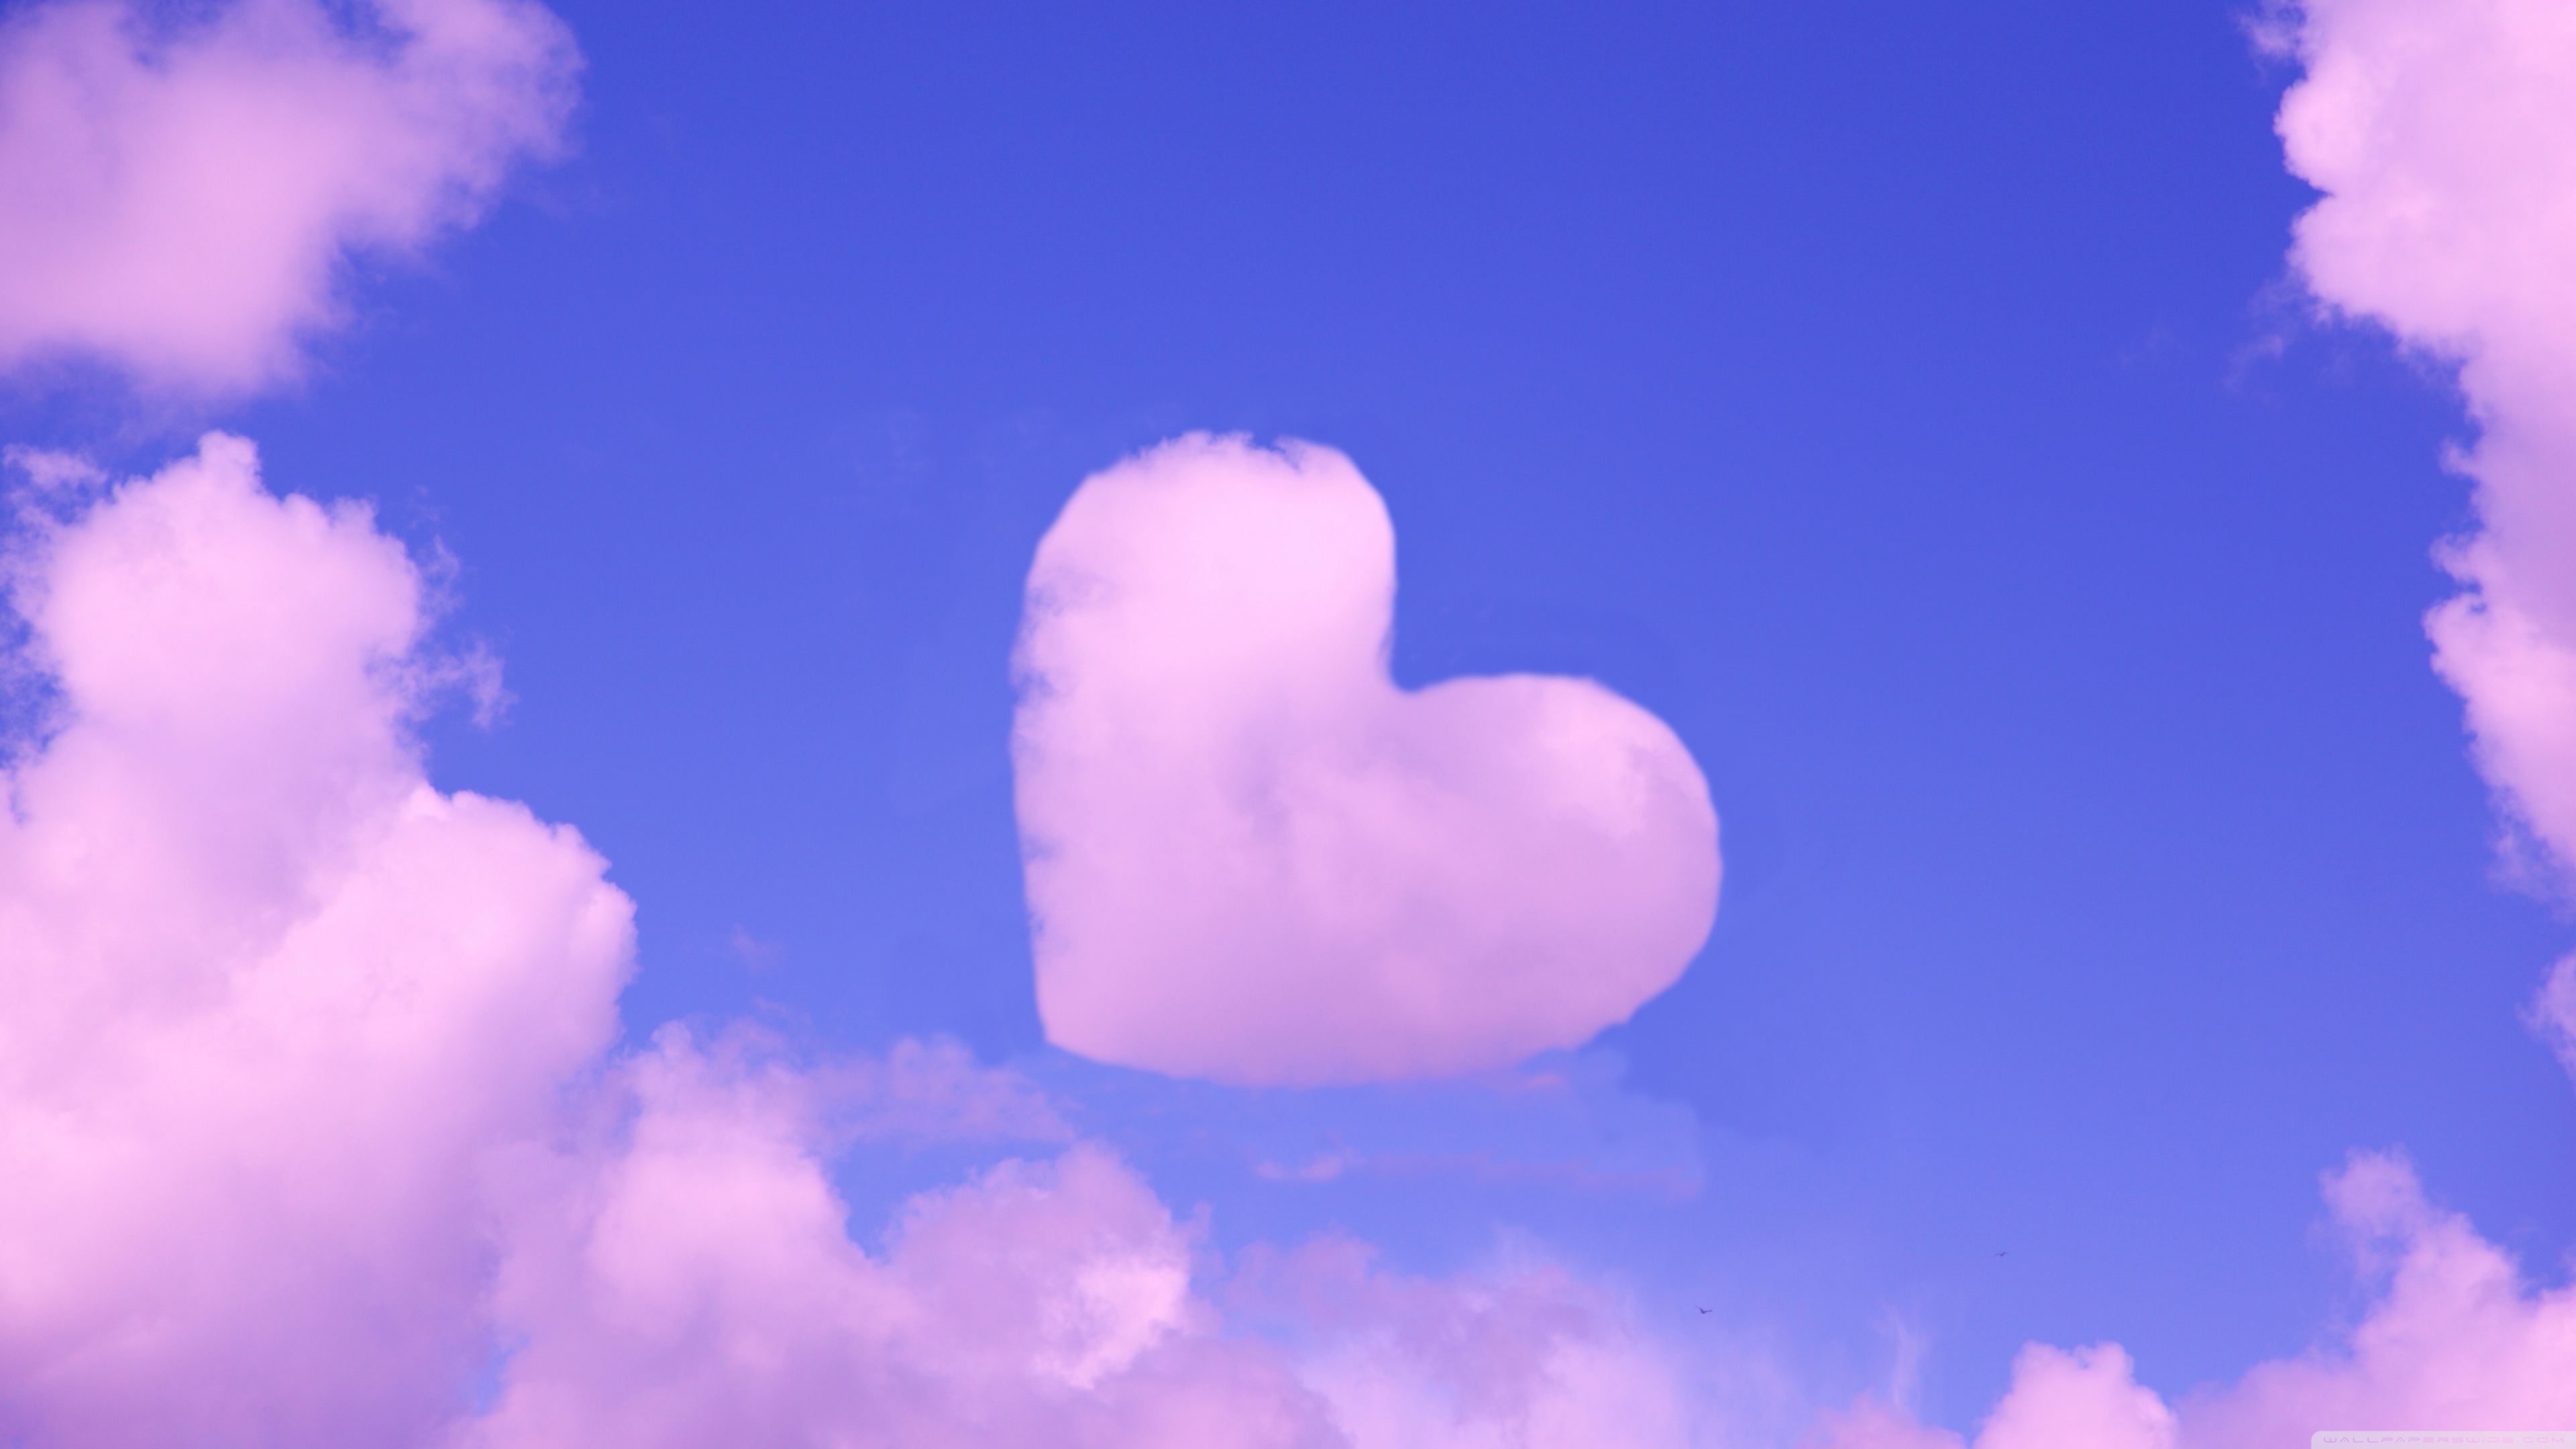 Hãy ngắm nhìn hình ảnh nền máy tính siêu nét với đám mây hình trái tim màu hồng quyến rũ, tạo nên không gian làm việc hay học tập tràn đầy lãng mạn và dịu êm. Chắc chắn bạn sẽ cảm thấy thư giãn và hạnh phúc hơn với hình ảnh đẹp như vậy.